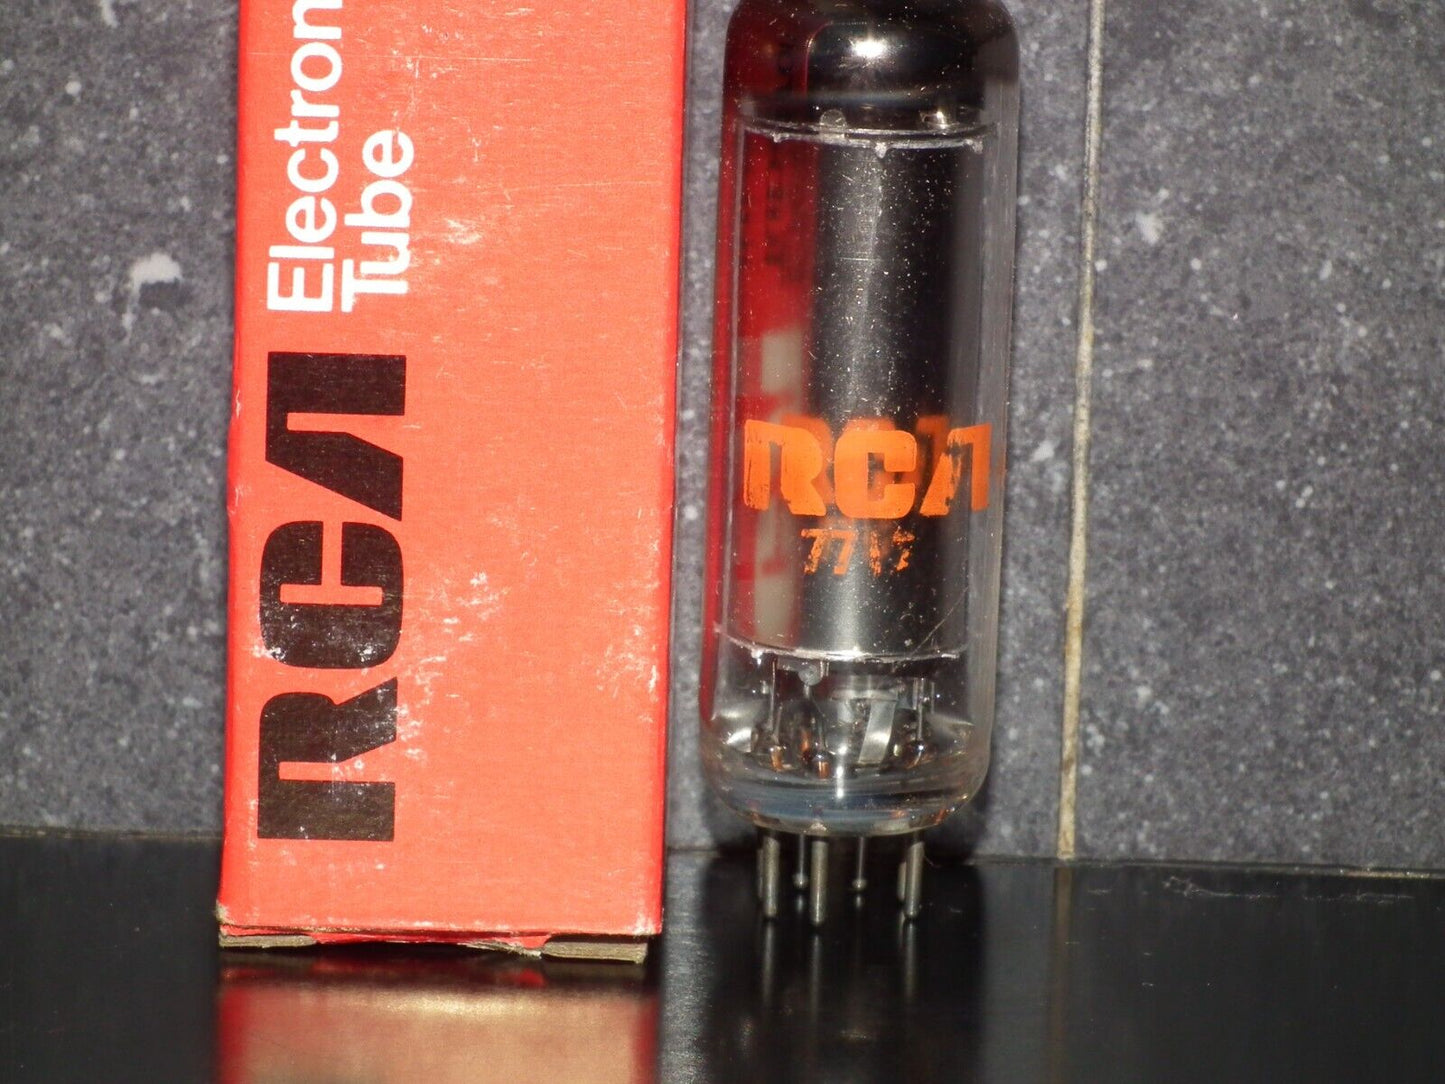 0B2 OB2 RCA NOS 108C1 stabilisator tube STV108/30 USA Made